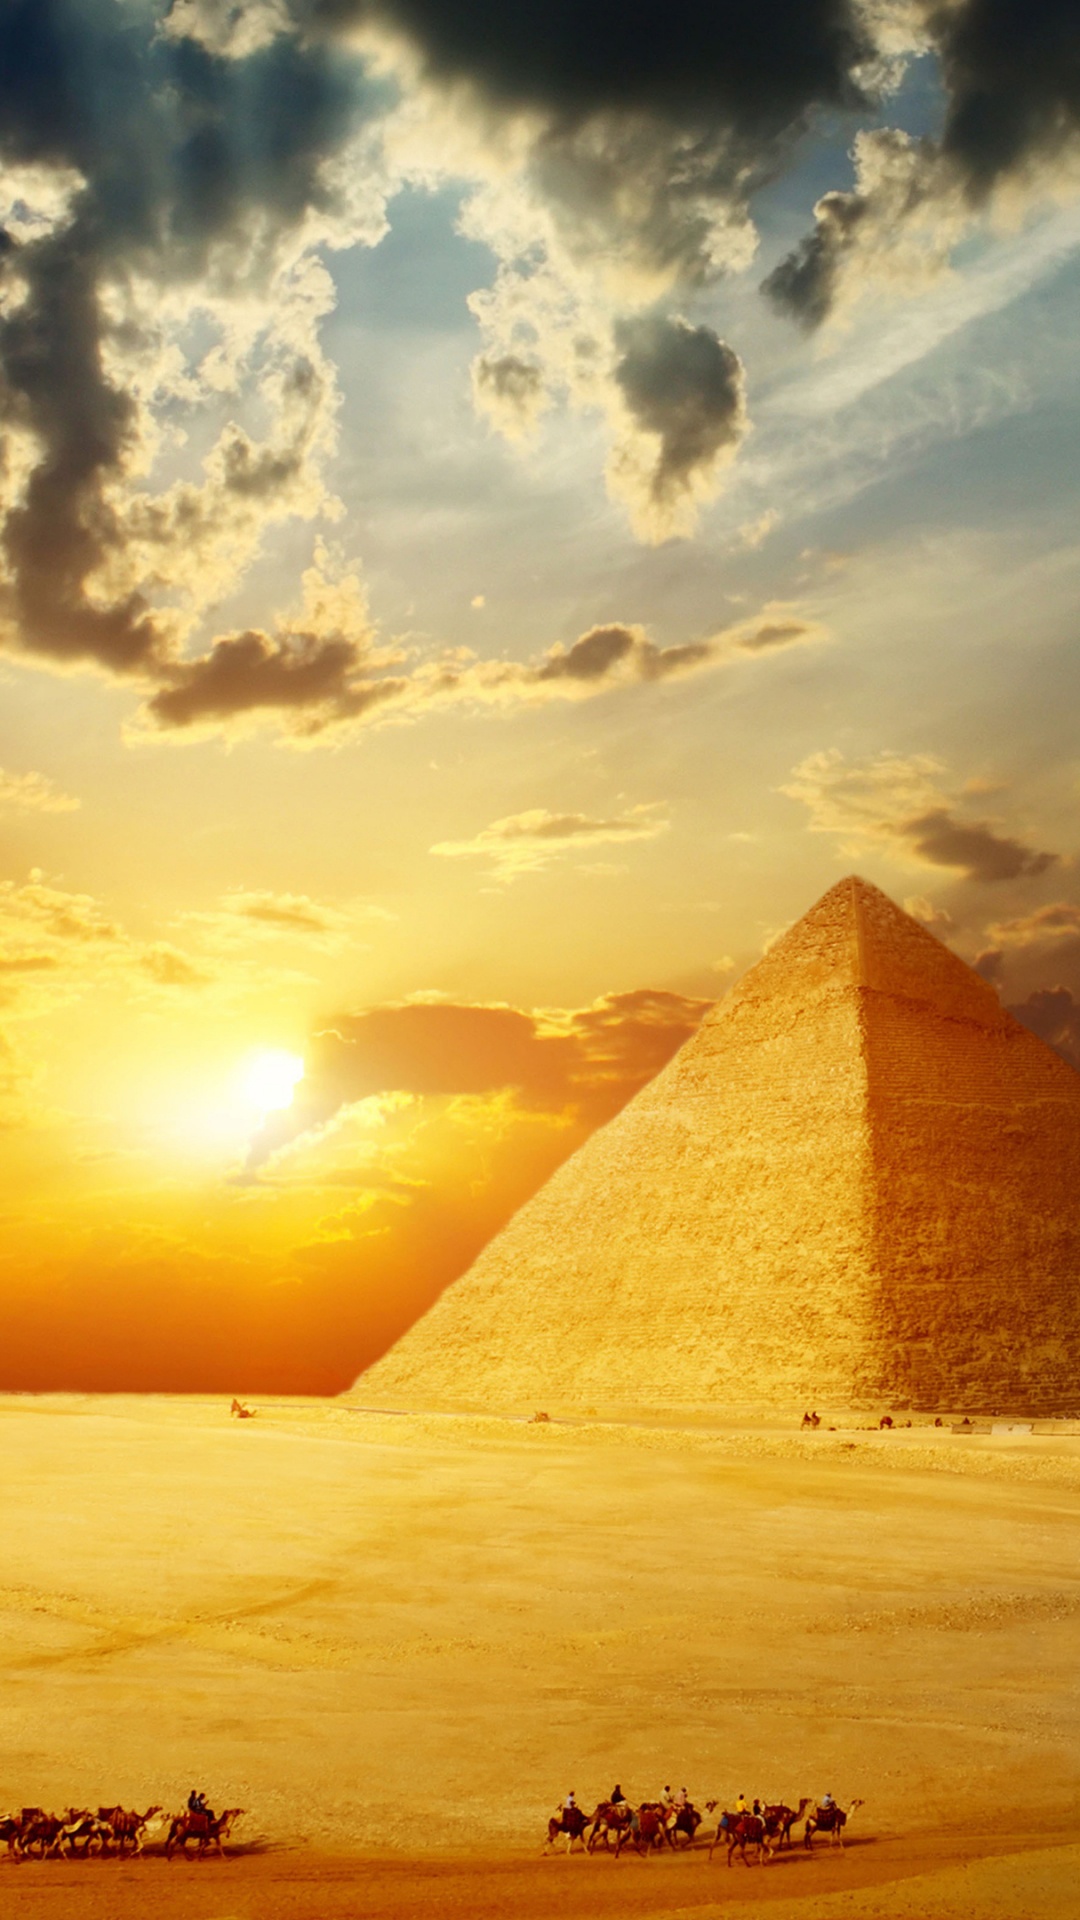 开罗, 埃及金字塔, 金字塔, 里程碑, 纪念碑 壁纸 1080x1920 允许